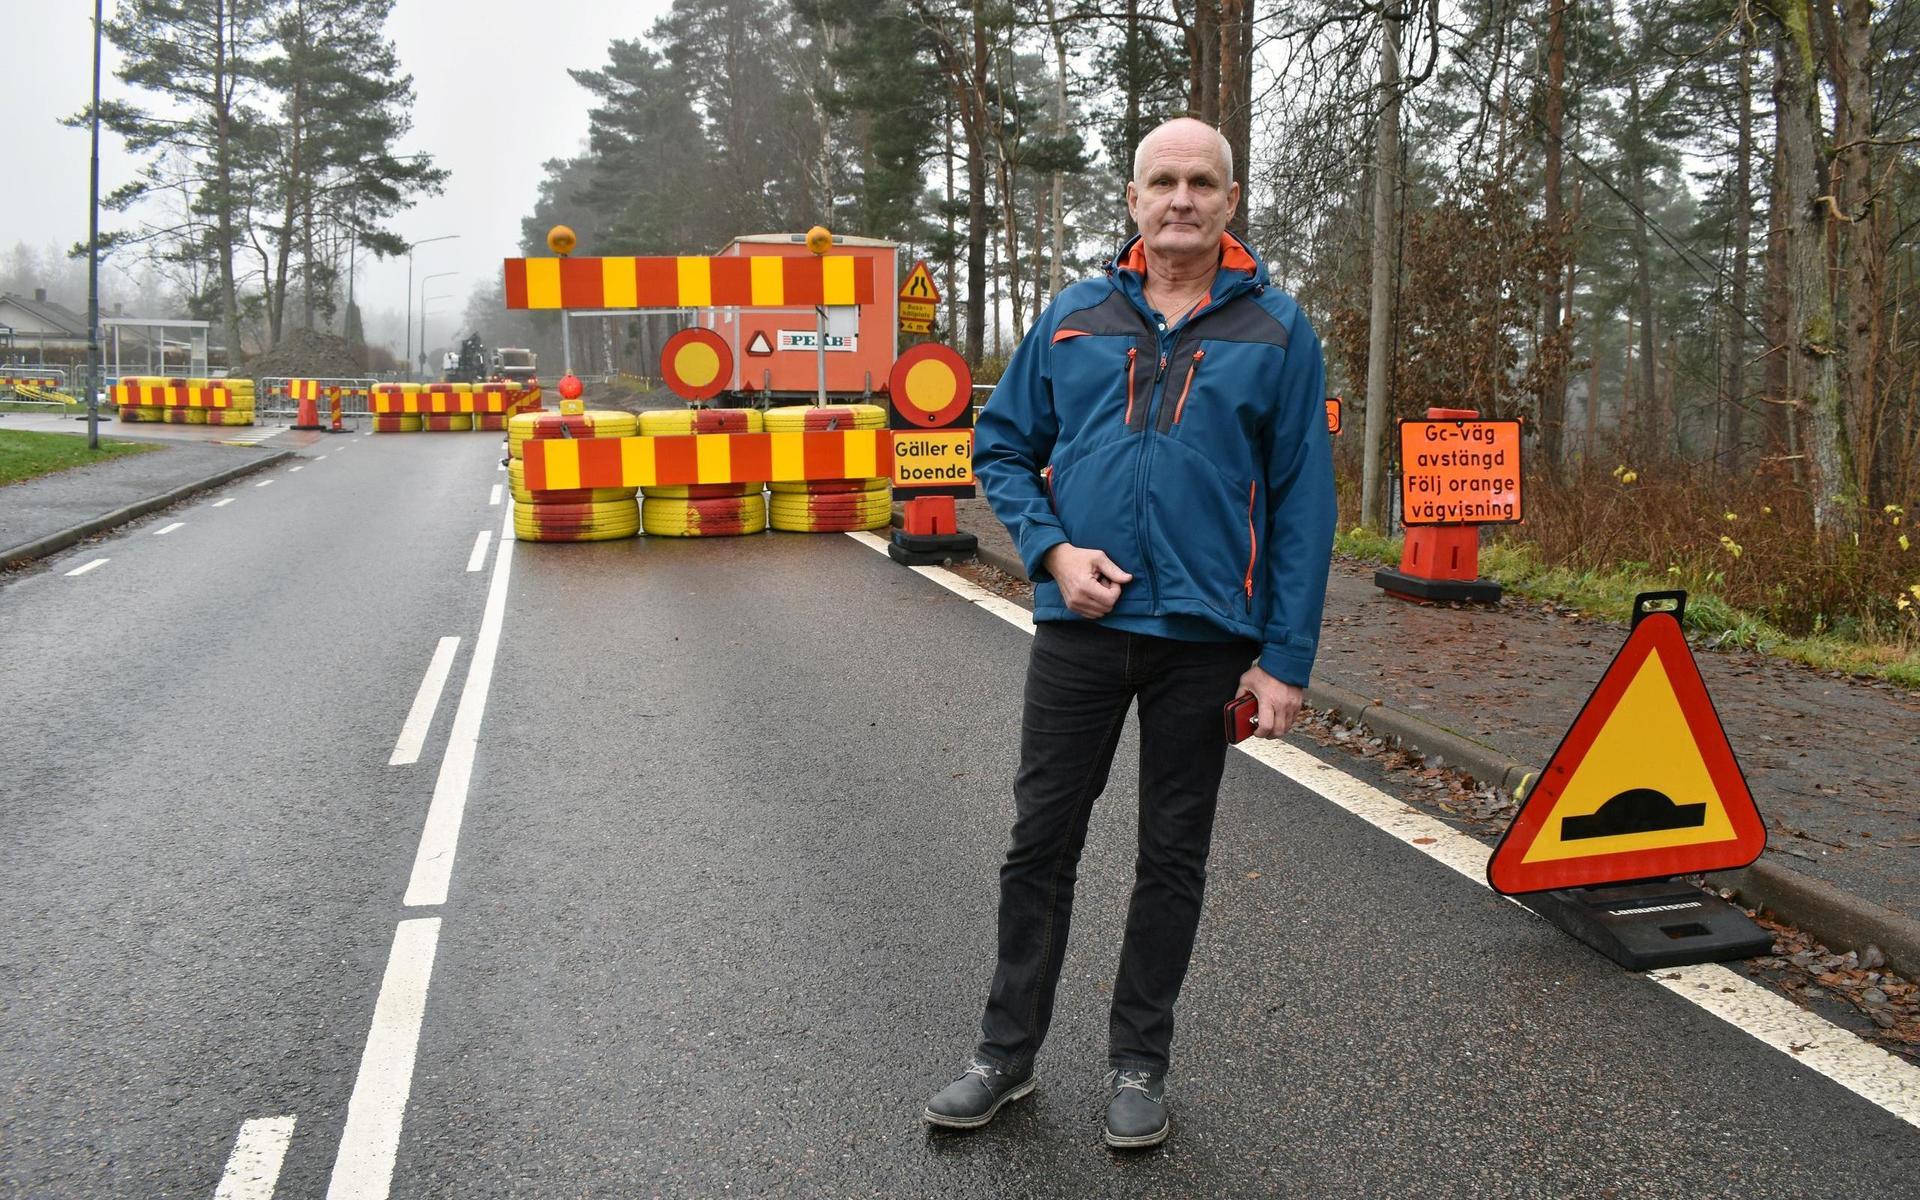 Invånaren Göran Malmgren är kritisk till att Trafikverket har stängt av Gamla Nissastigen, som är en genomfartsväg genom hela Torup för personbilar, lastbilar och kollektivtrafik. Anledningen är att en busshållplats ska byggas om i fem veckors tid.